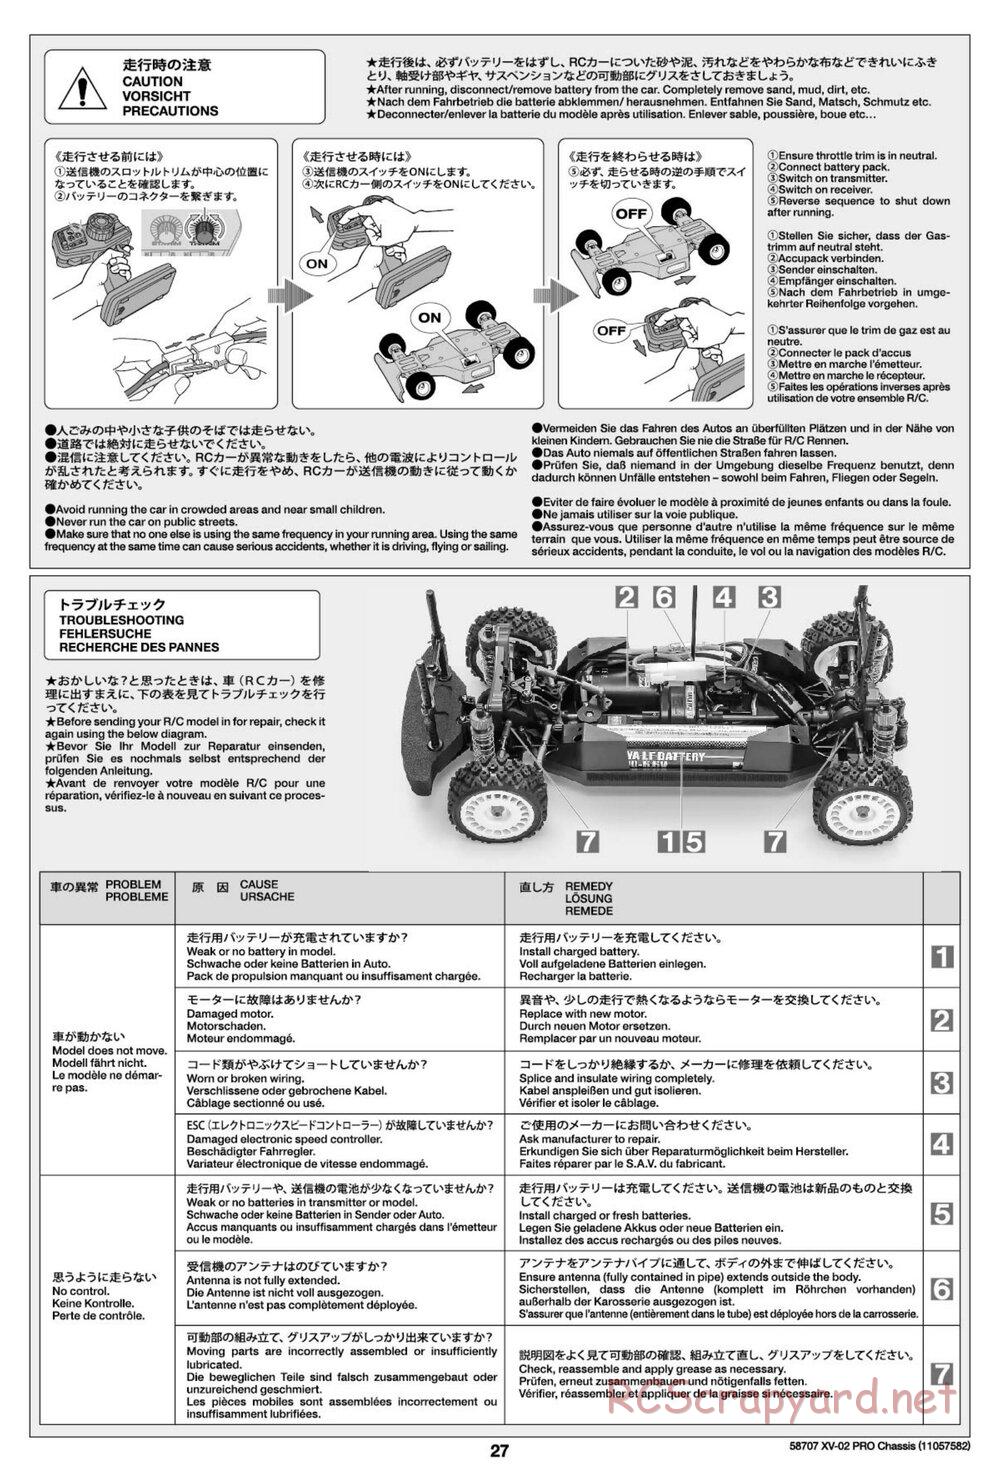 Tamiya - XV-02 Pro Chassis - Manual - Page 27